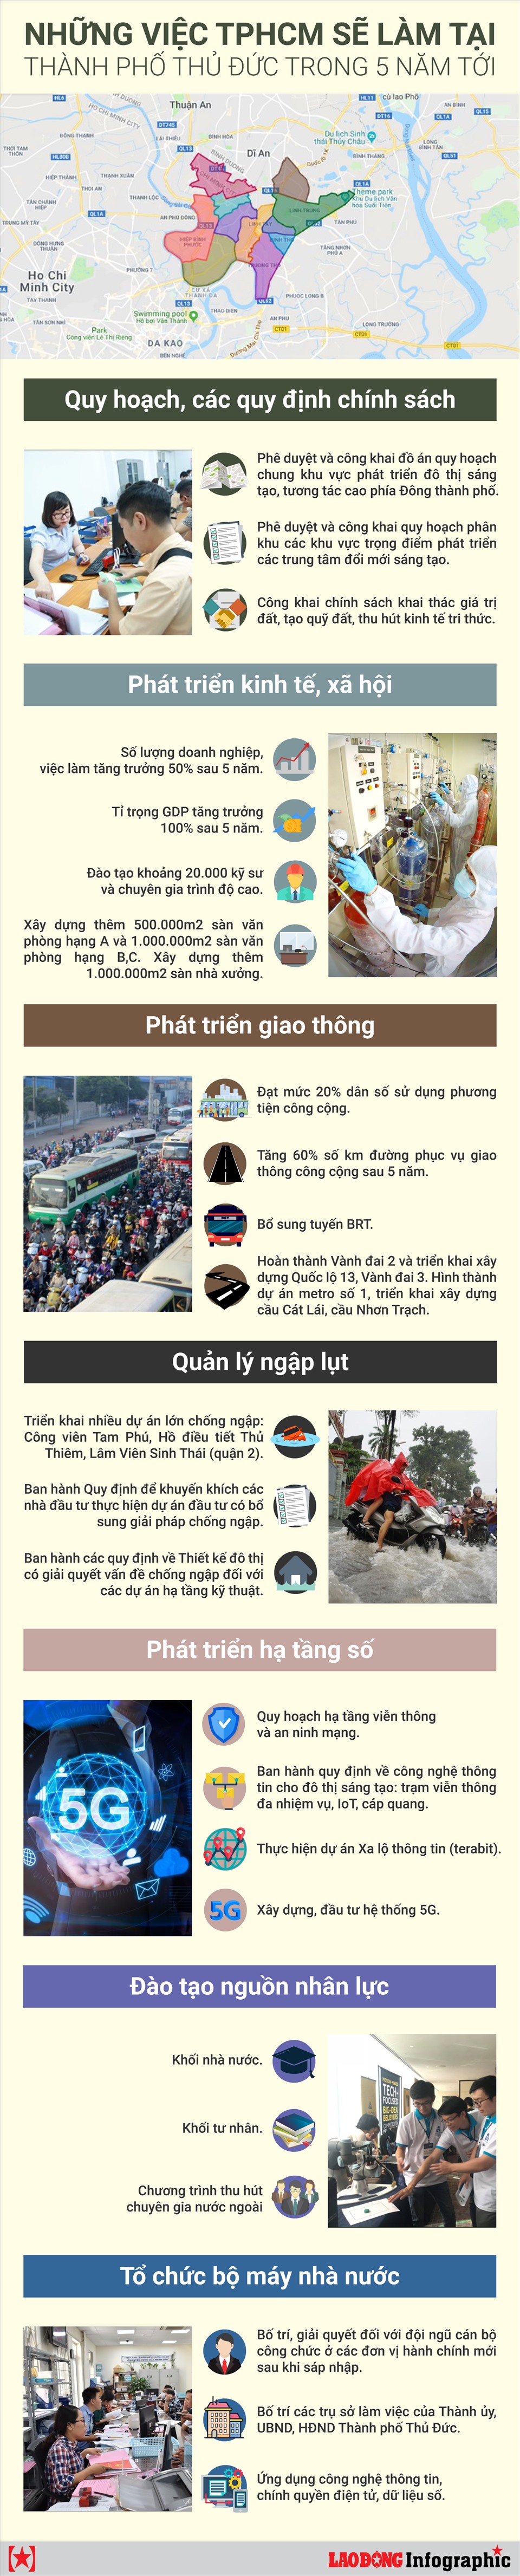 [Infographics] Những việc TP. Hồ Chí Minh sẽ làm tại TP. Thủ Đức trong 5 năm tới - Ảnh 1